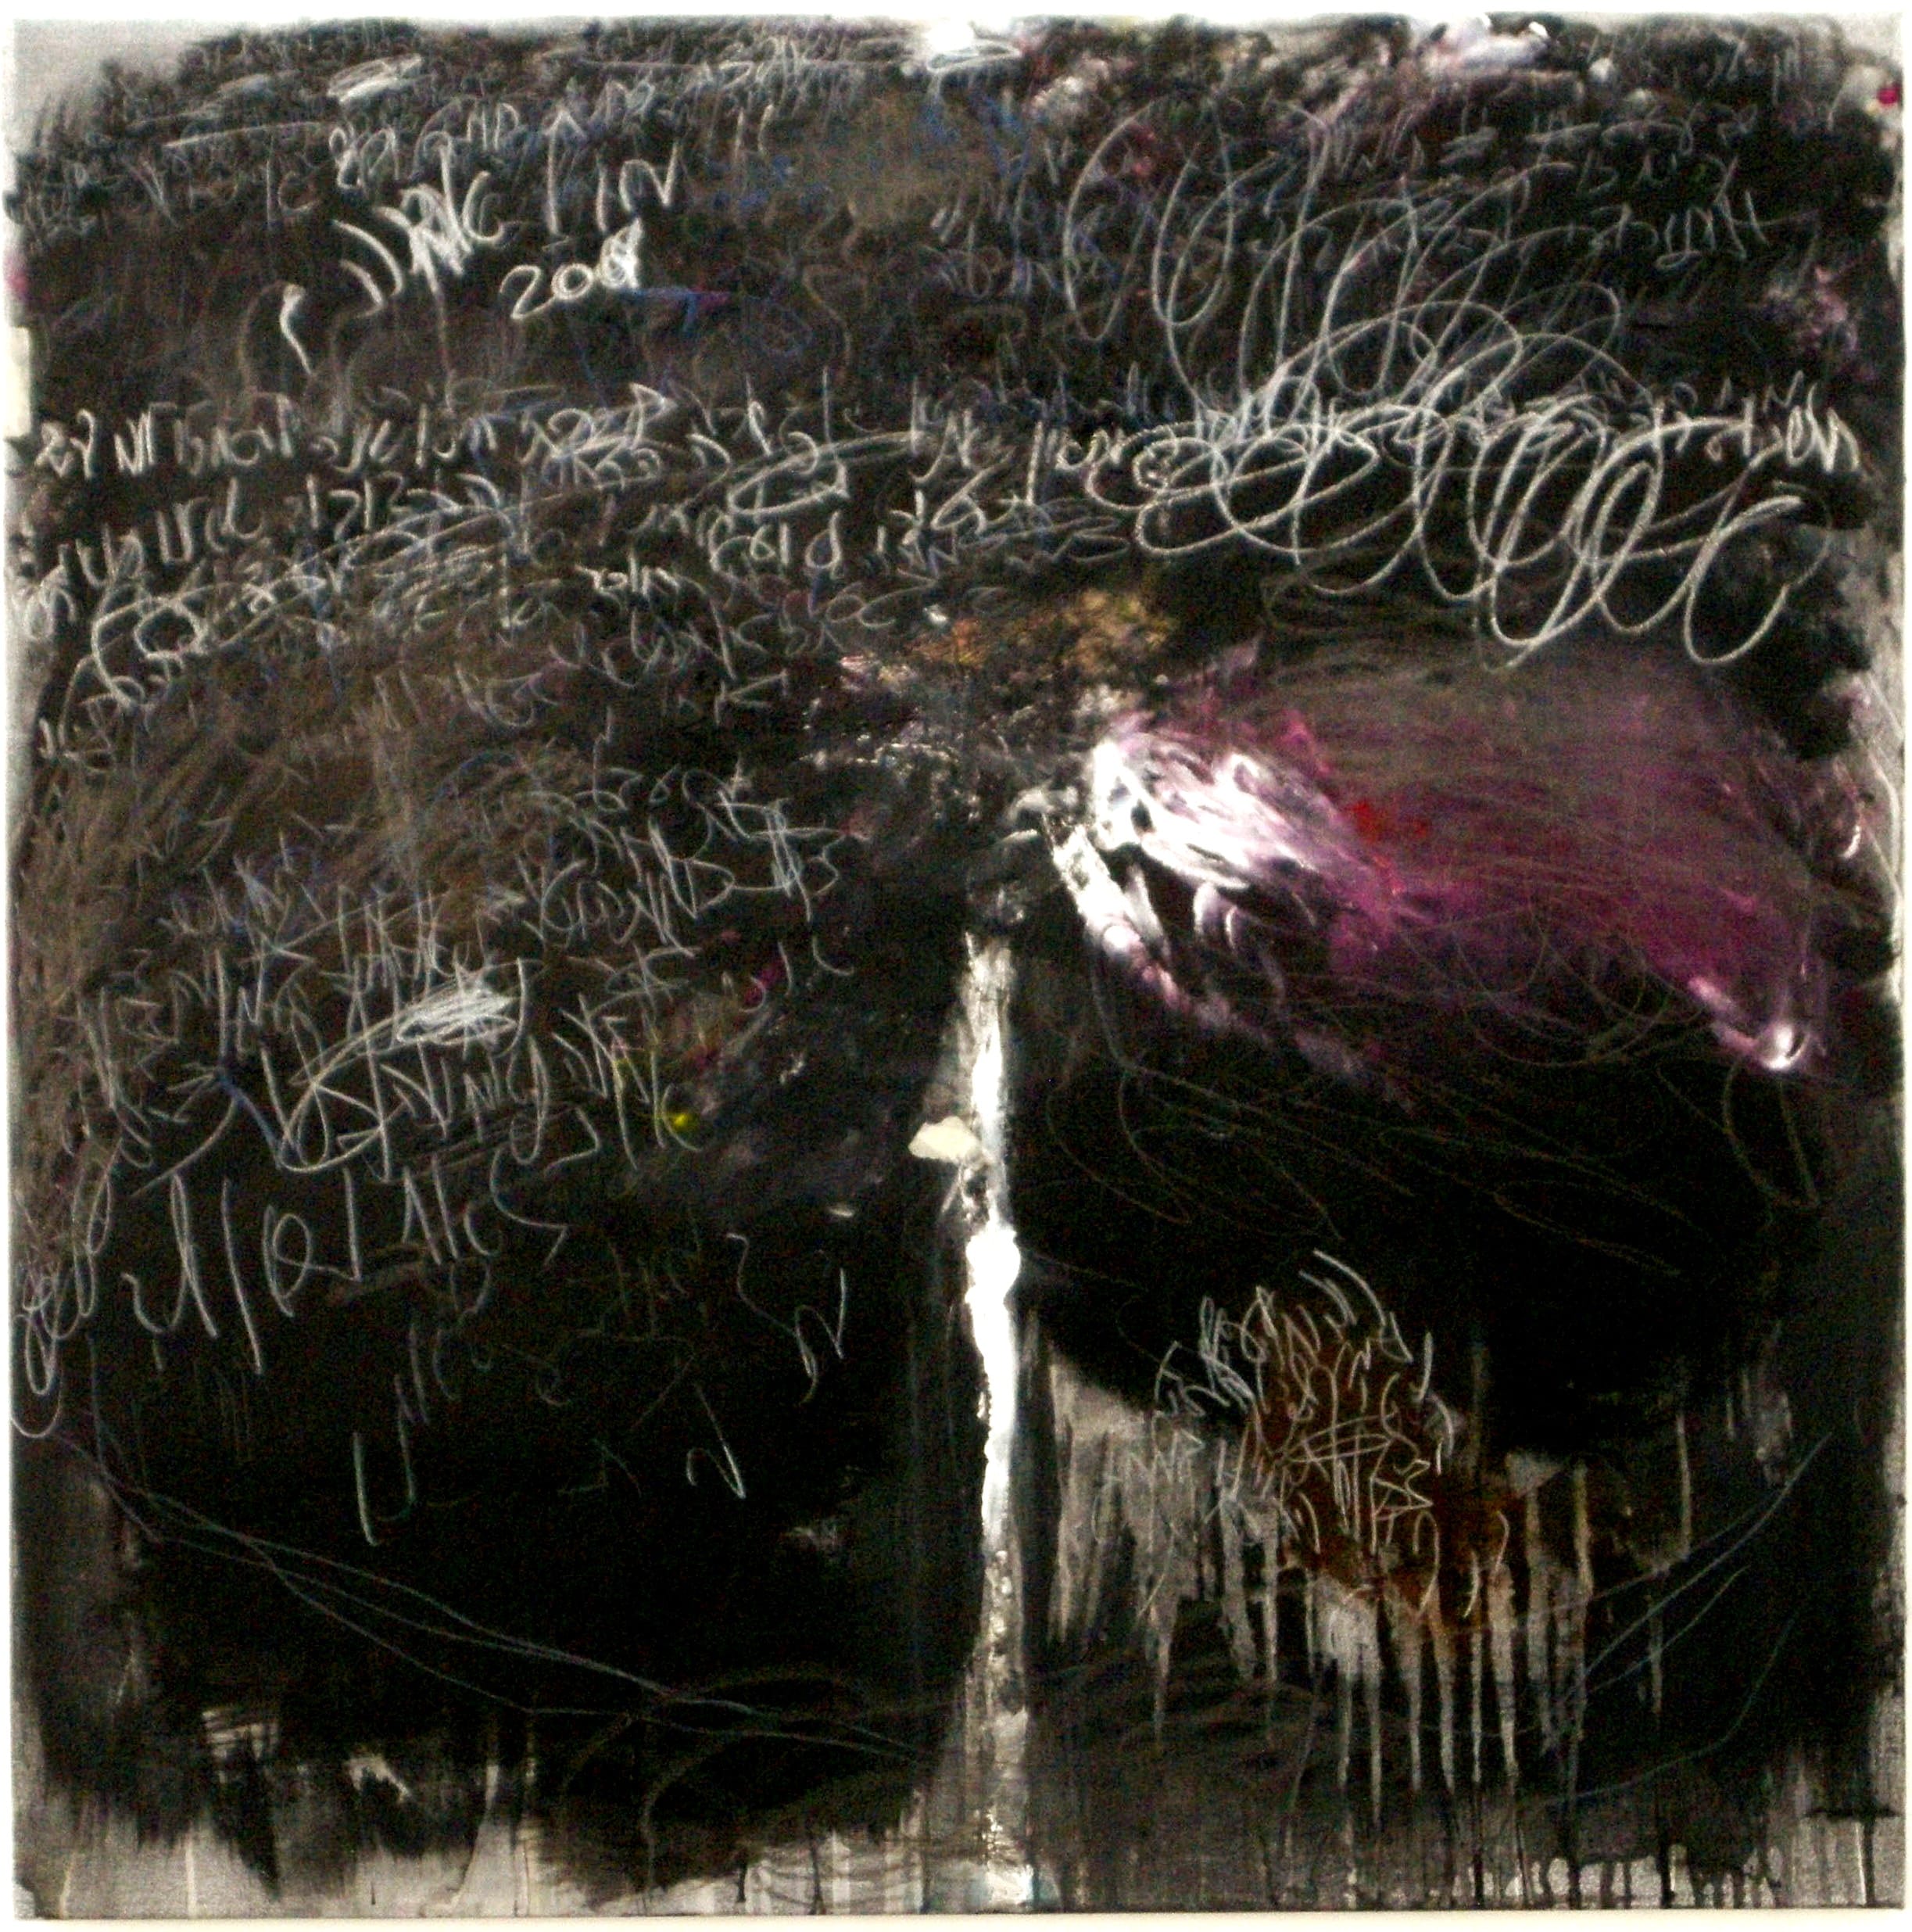 אמיל אברהם, "פרחים עצובים", 2009. מקום-לאמנות, תל-אביב